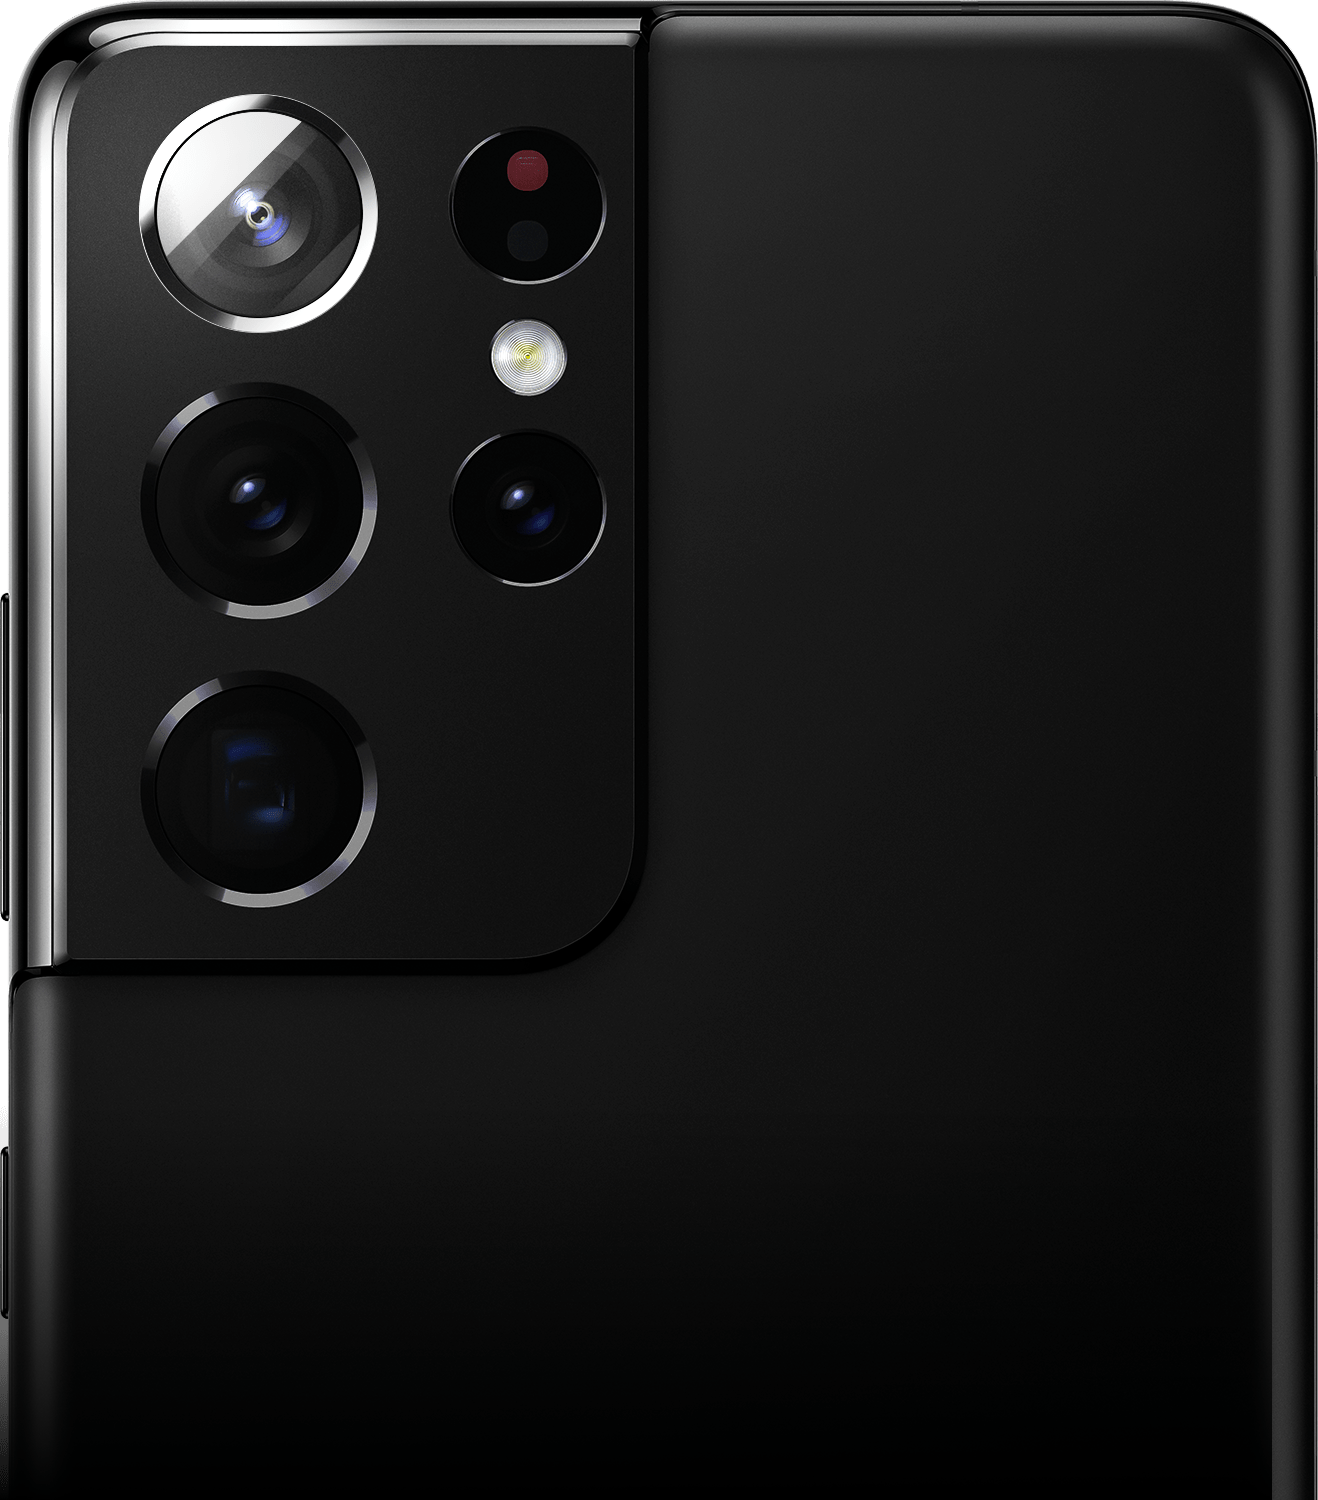 نمای نزدیک از دوربین پشت در Galaxy S21 Ultra 5G به رنگ Phantom Black با دوربین اولترا واید برجسته شده